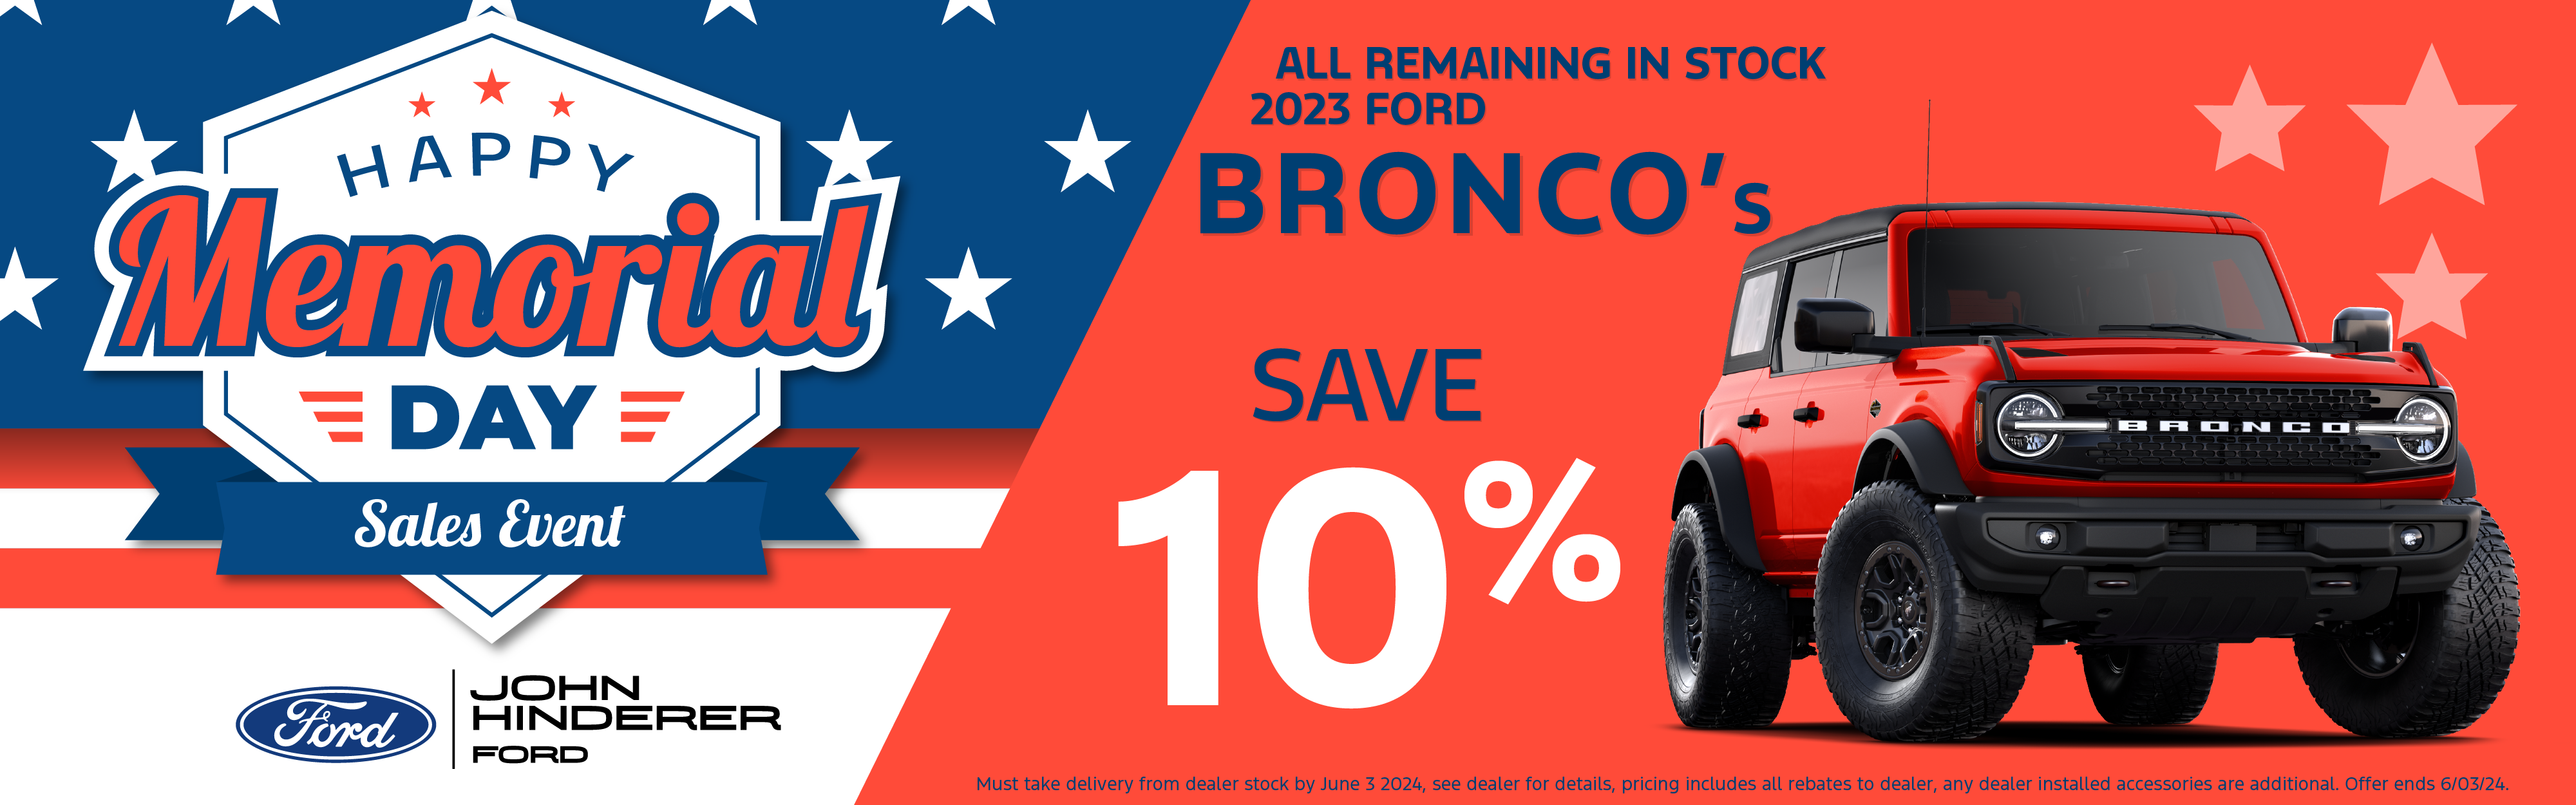 Save 10% on 2023 Bronco's